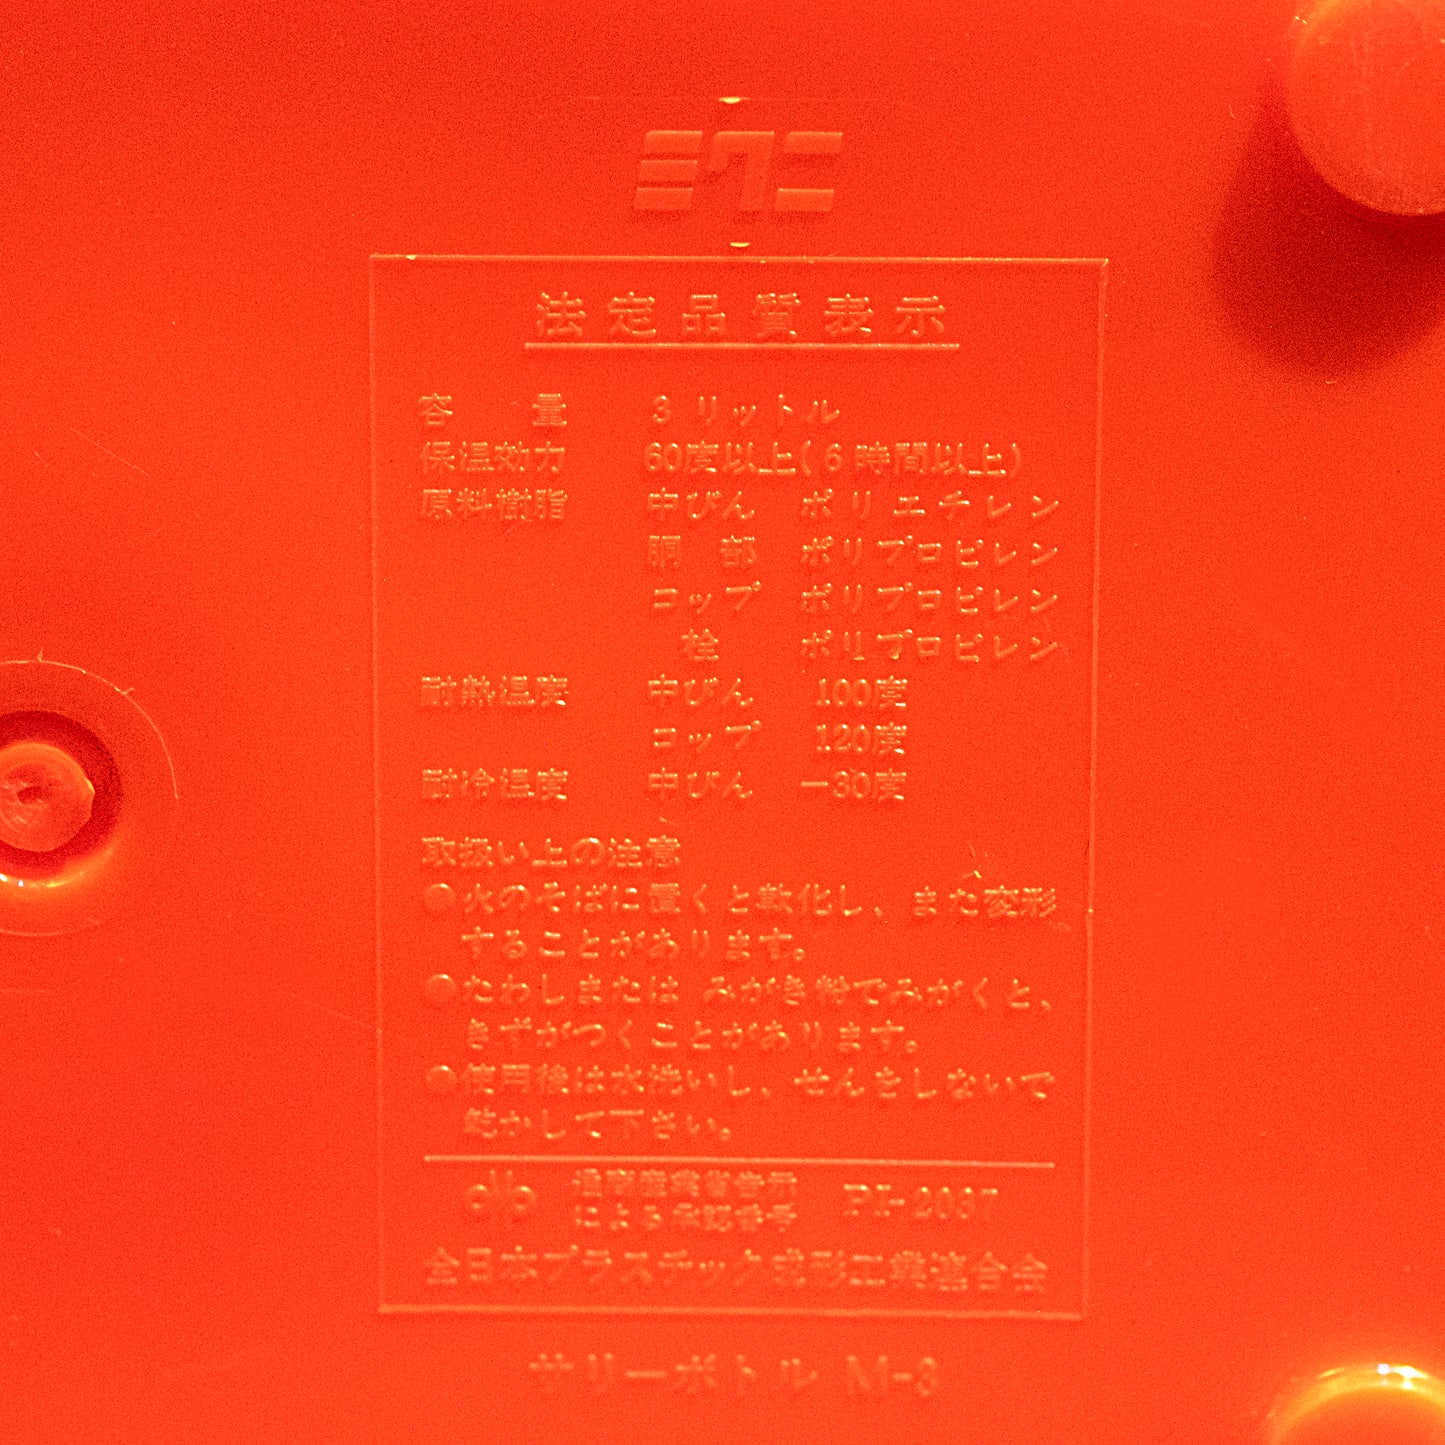 日本Sally Bottle 復古橙色保溫大水筒 3L